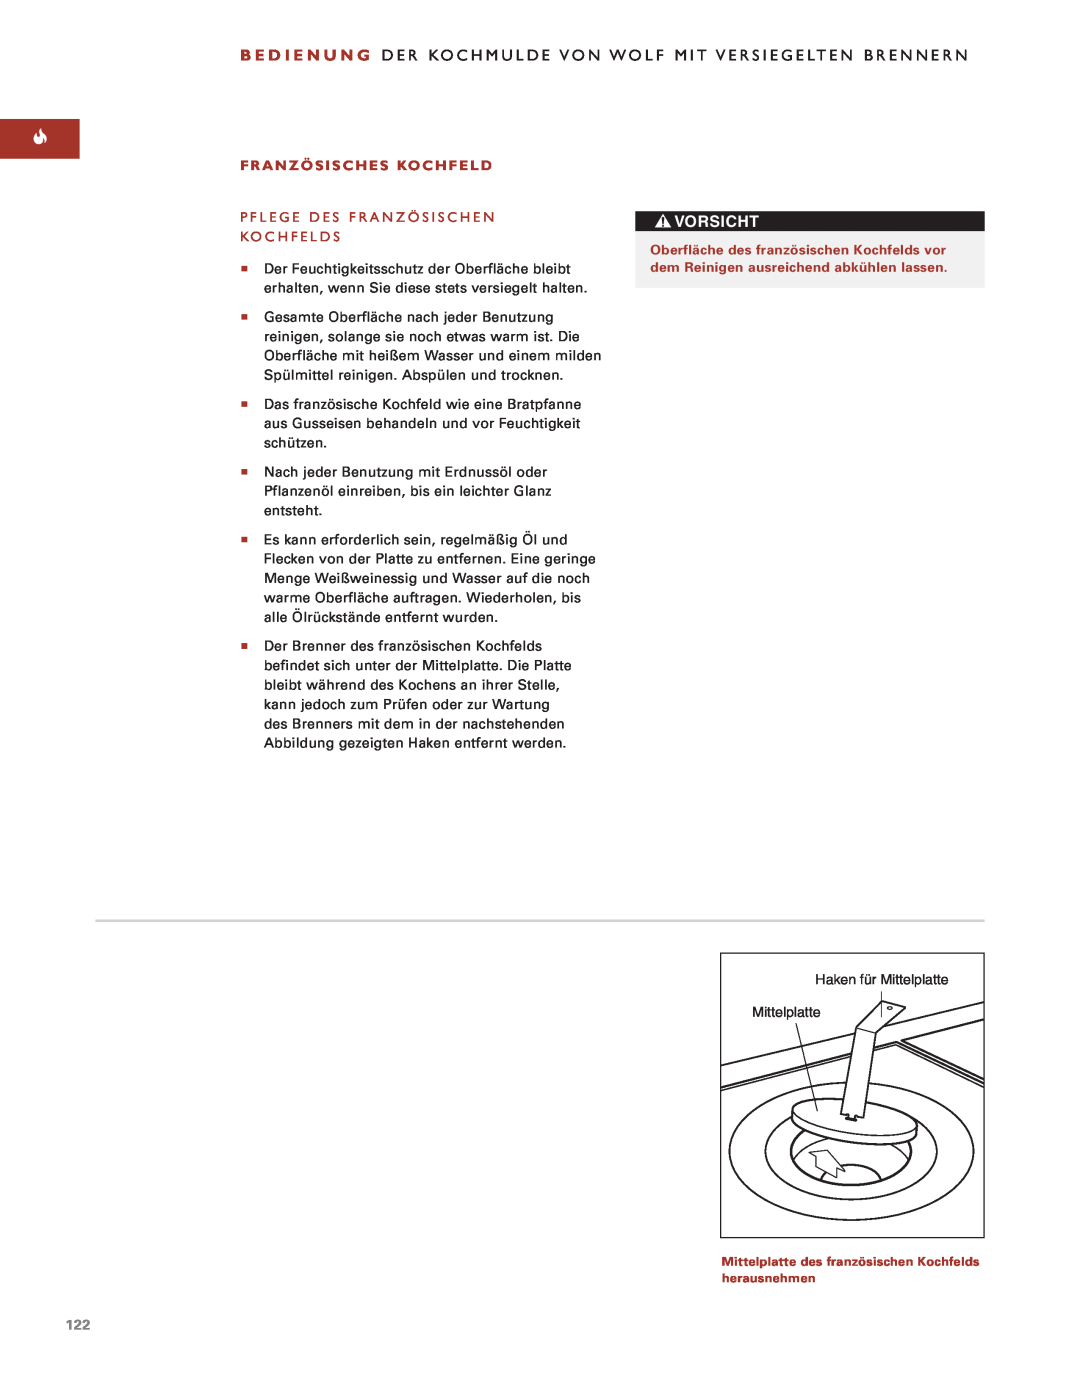 Sub-Zero Sealed Burner RangeTop manual Vorsicht, Französisches Kochfeld, Pflege Des Französischen Kochfelds, Mittelplatte 